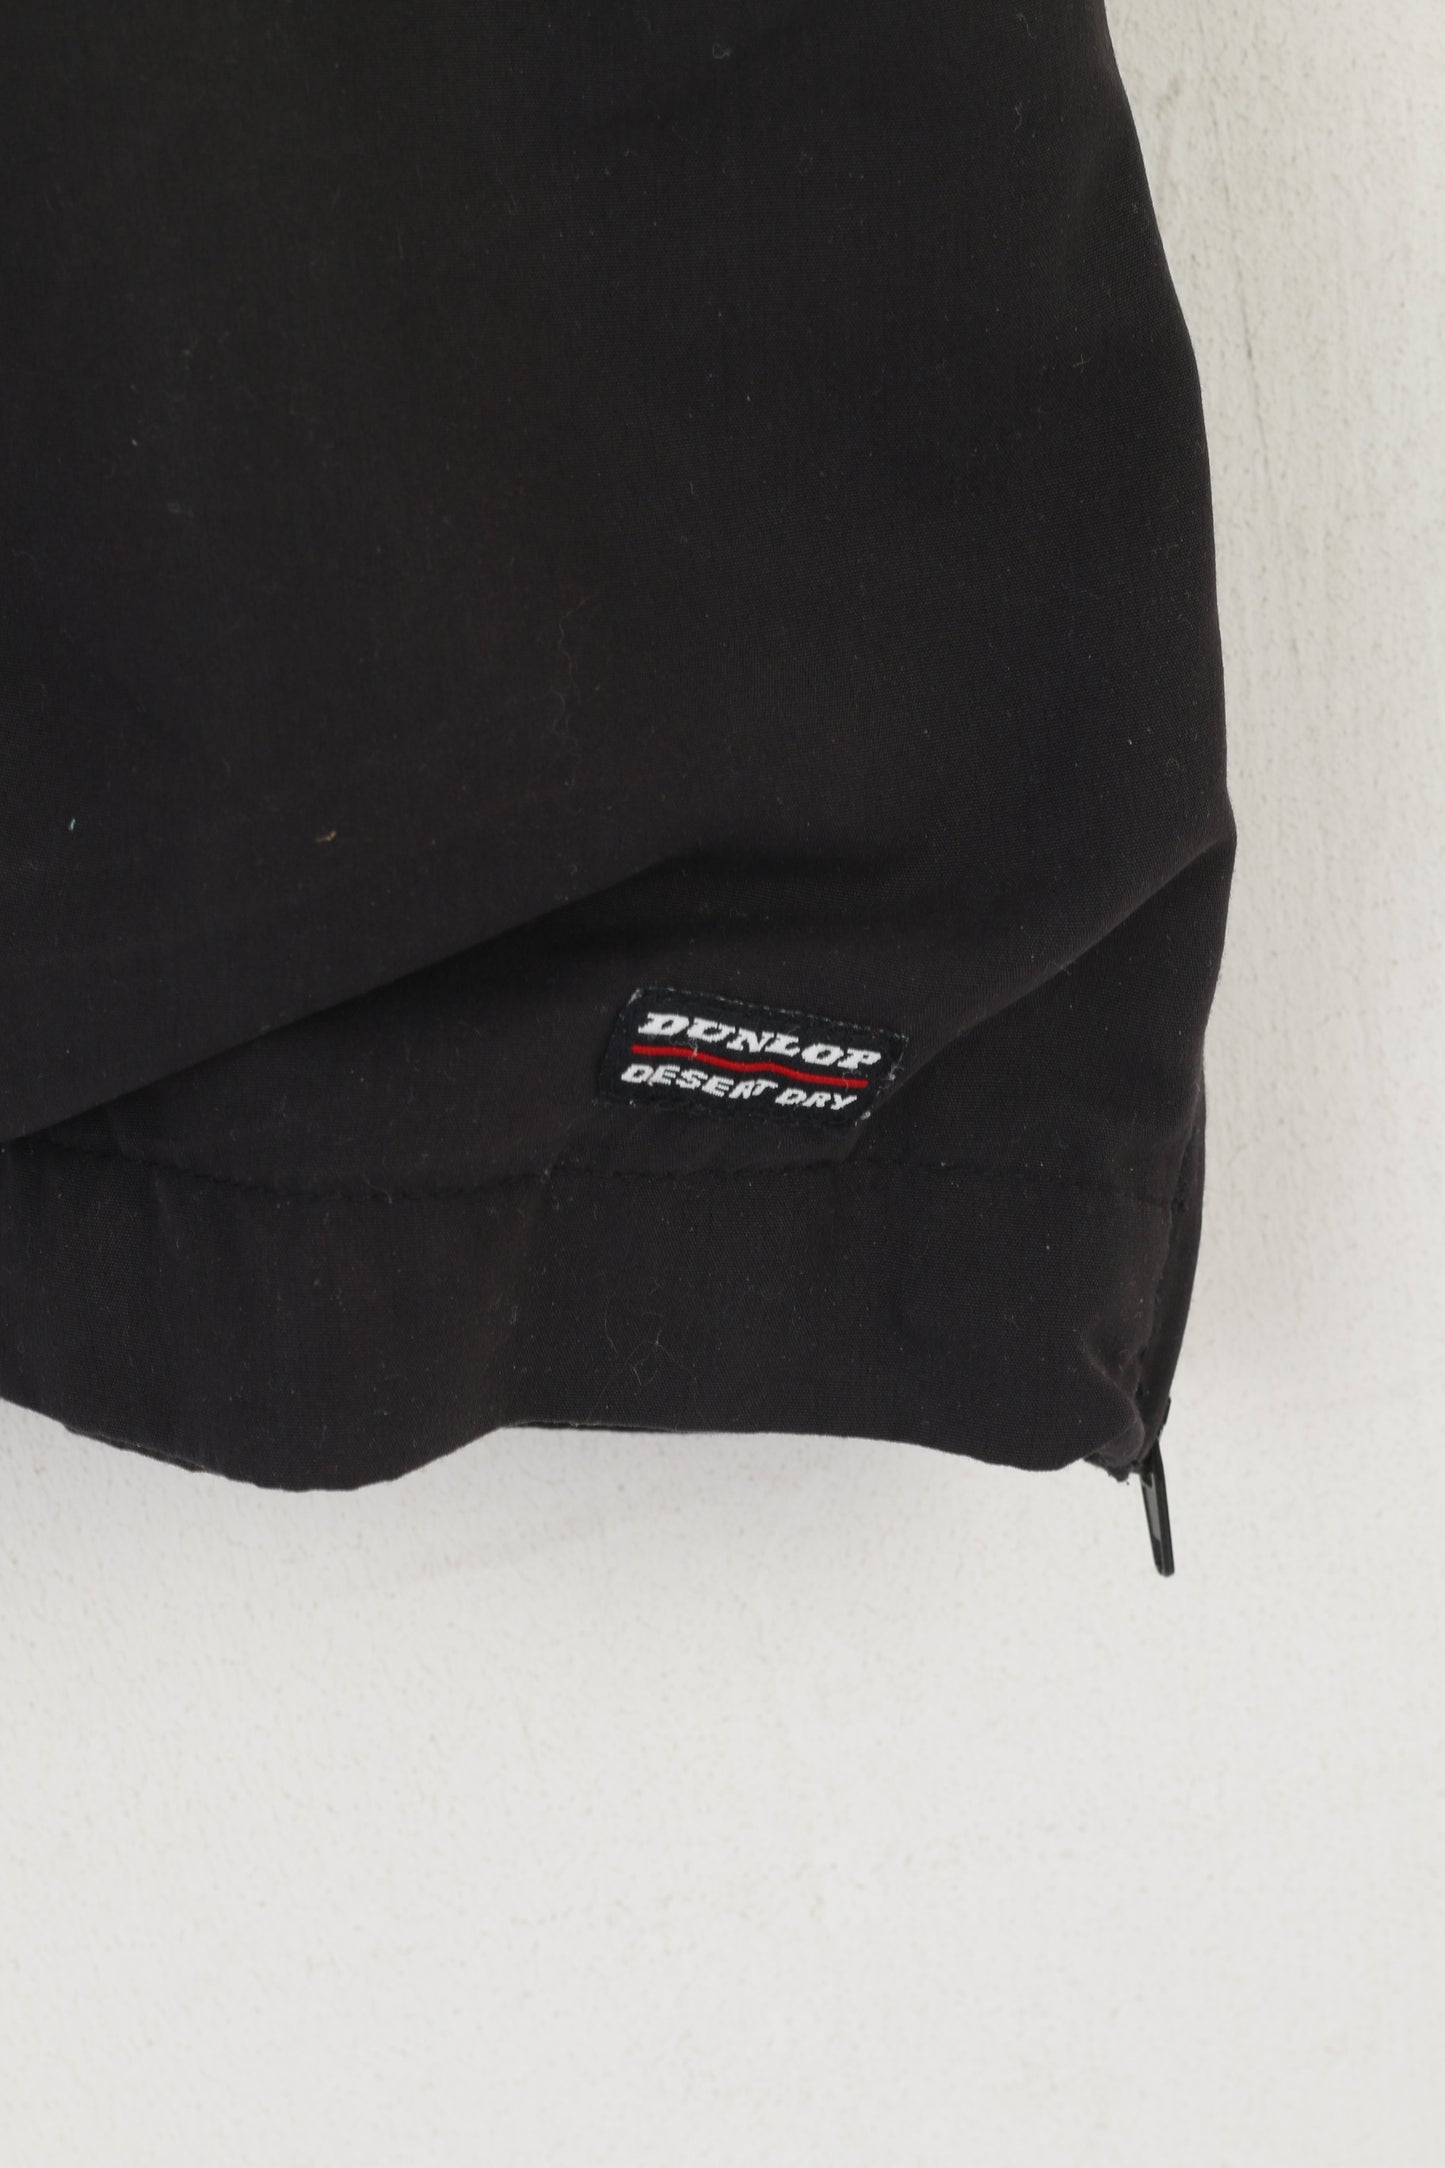 Dunlop Golf Men S Jacket Black Sportswear Short Sleeve Windbreaker Zip Neck Top